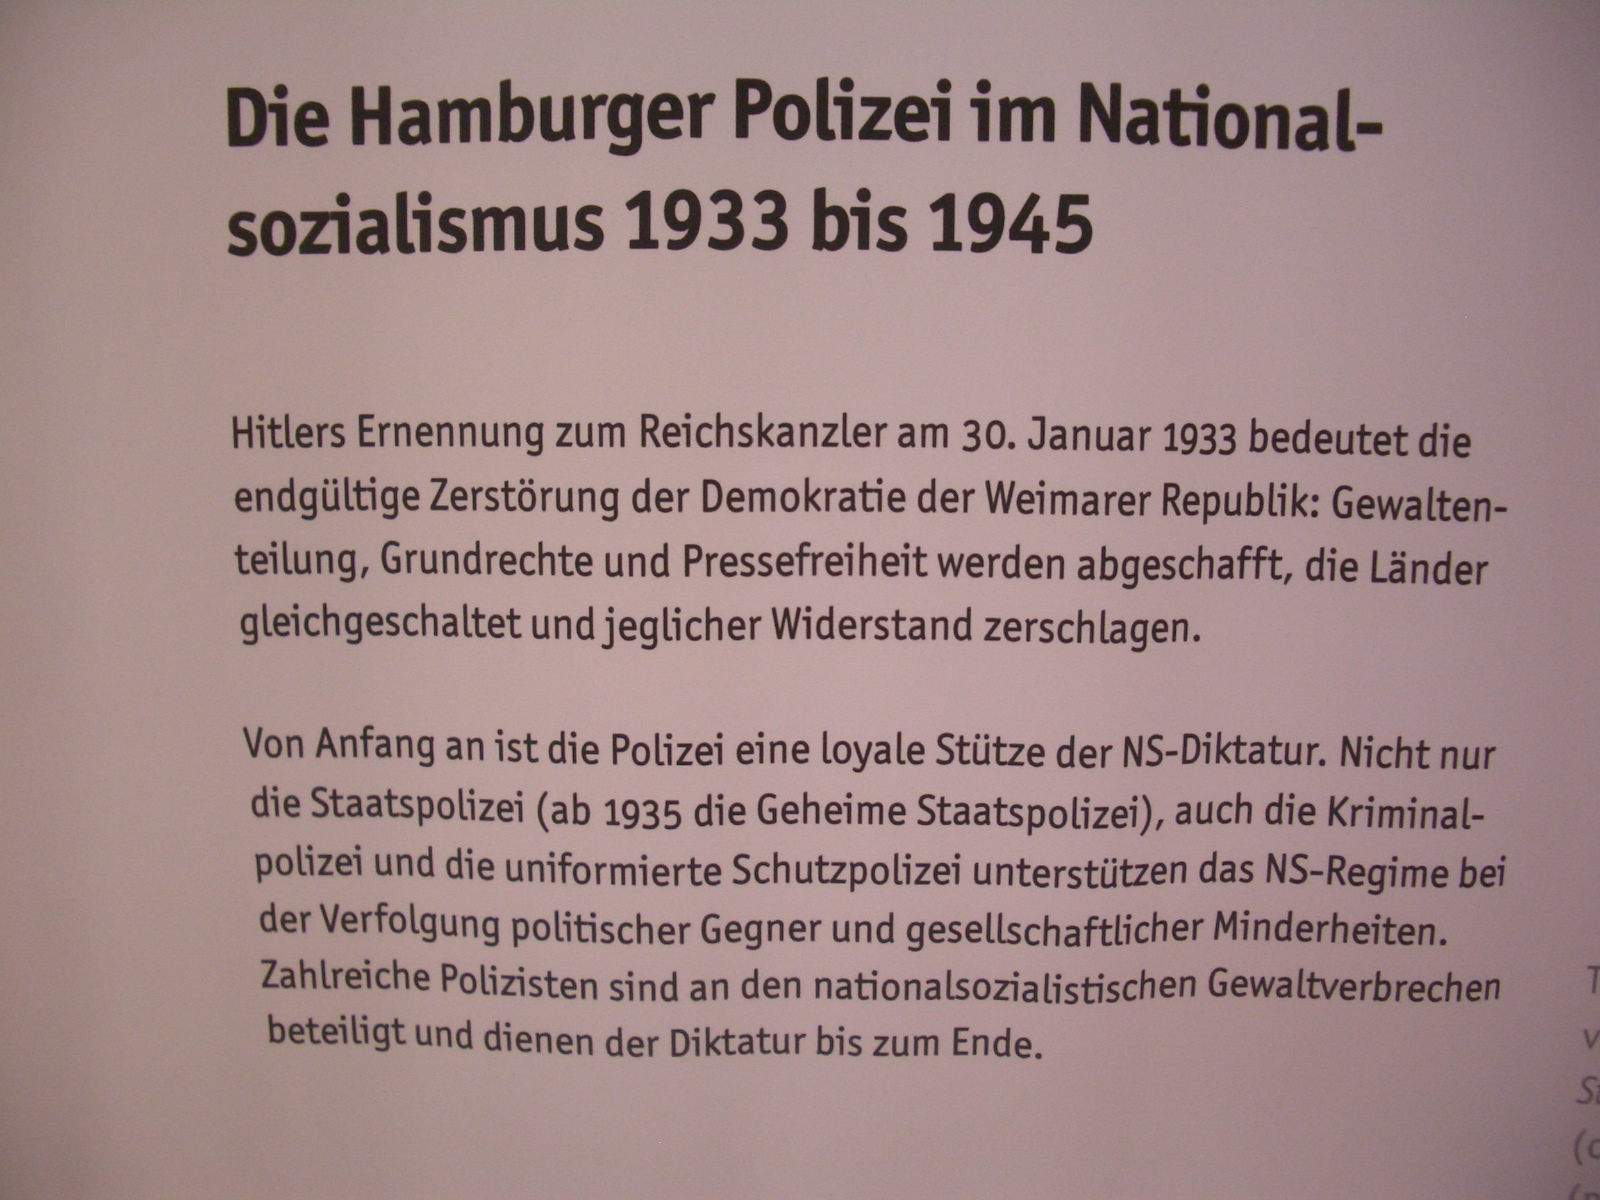 191120 PMH STS Meiendorf Kl 8 Polizei im Nationalsozialismus